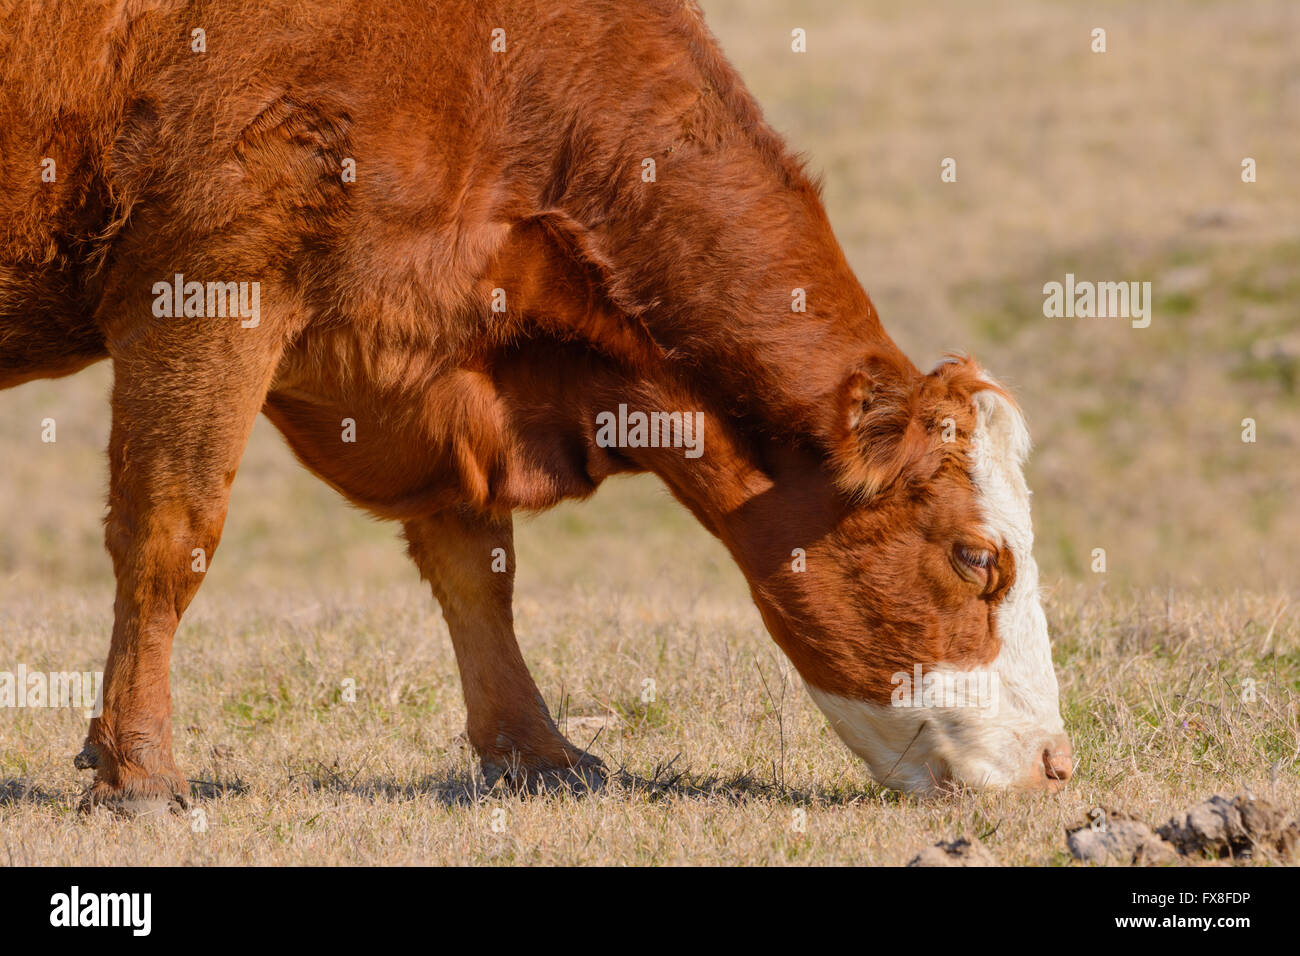 Hereford pascolo di vacca con la testa in giù mentre rivolta verso destra la pelliccia rossastra Foto Stock